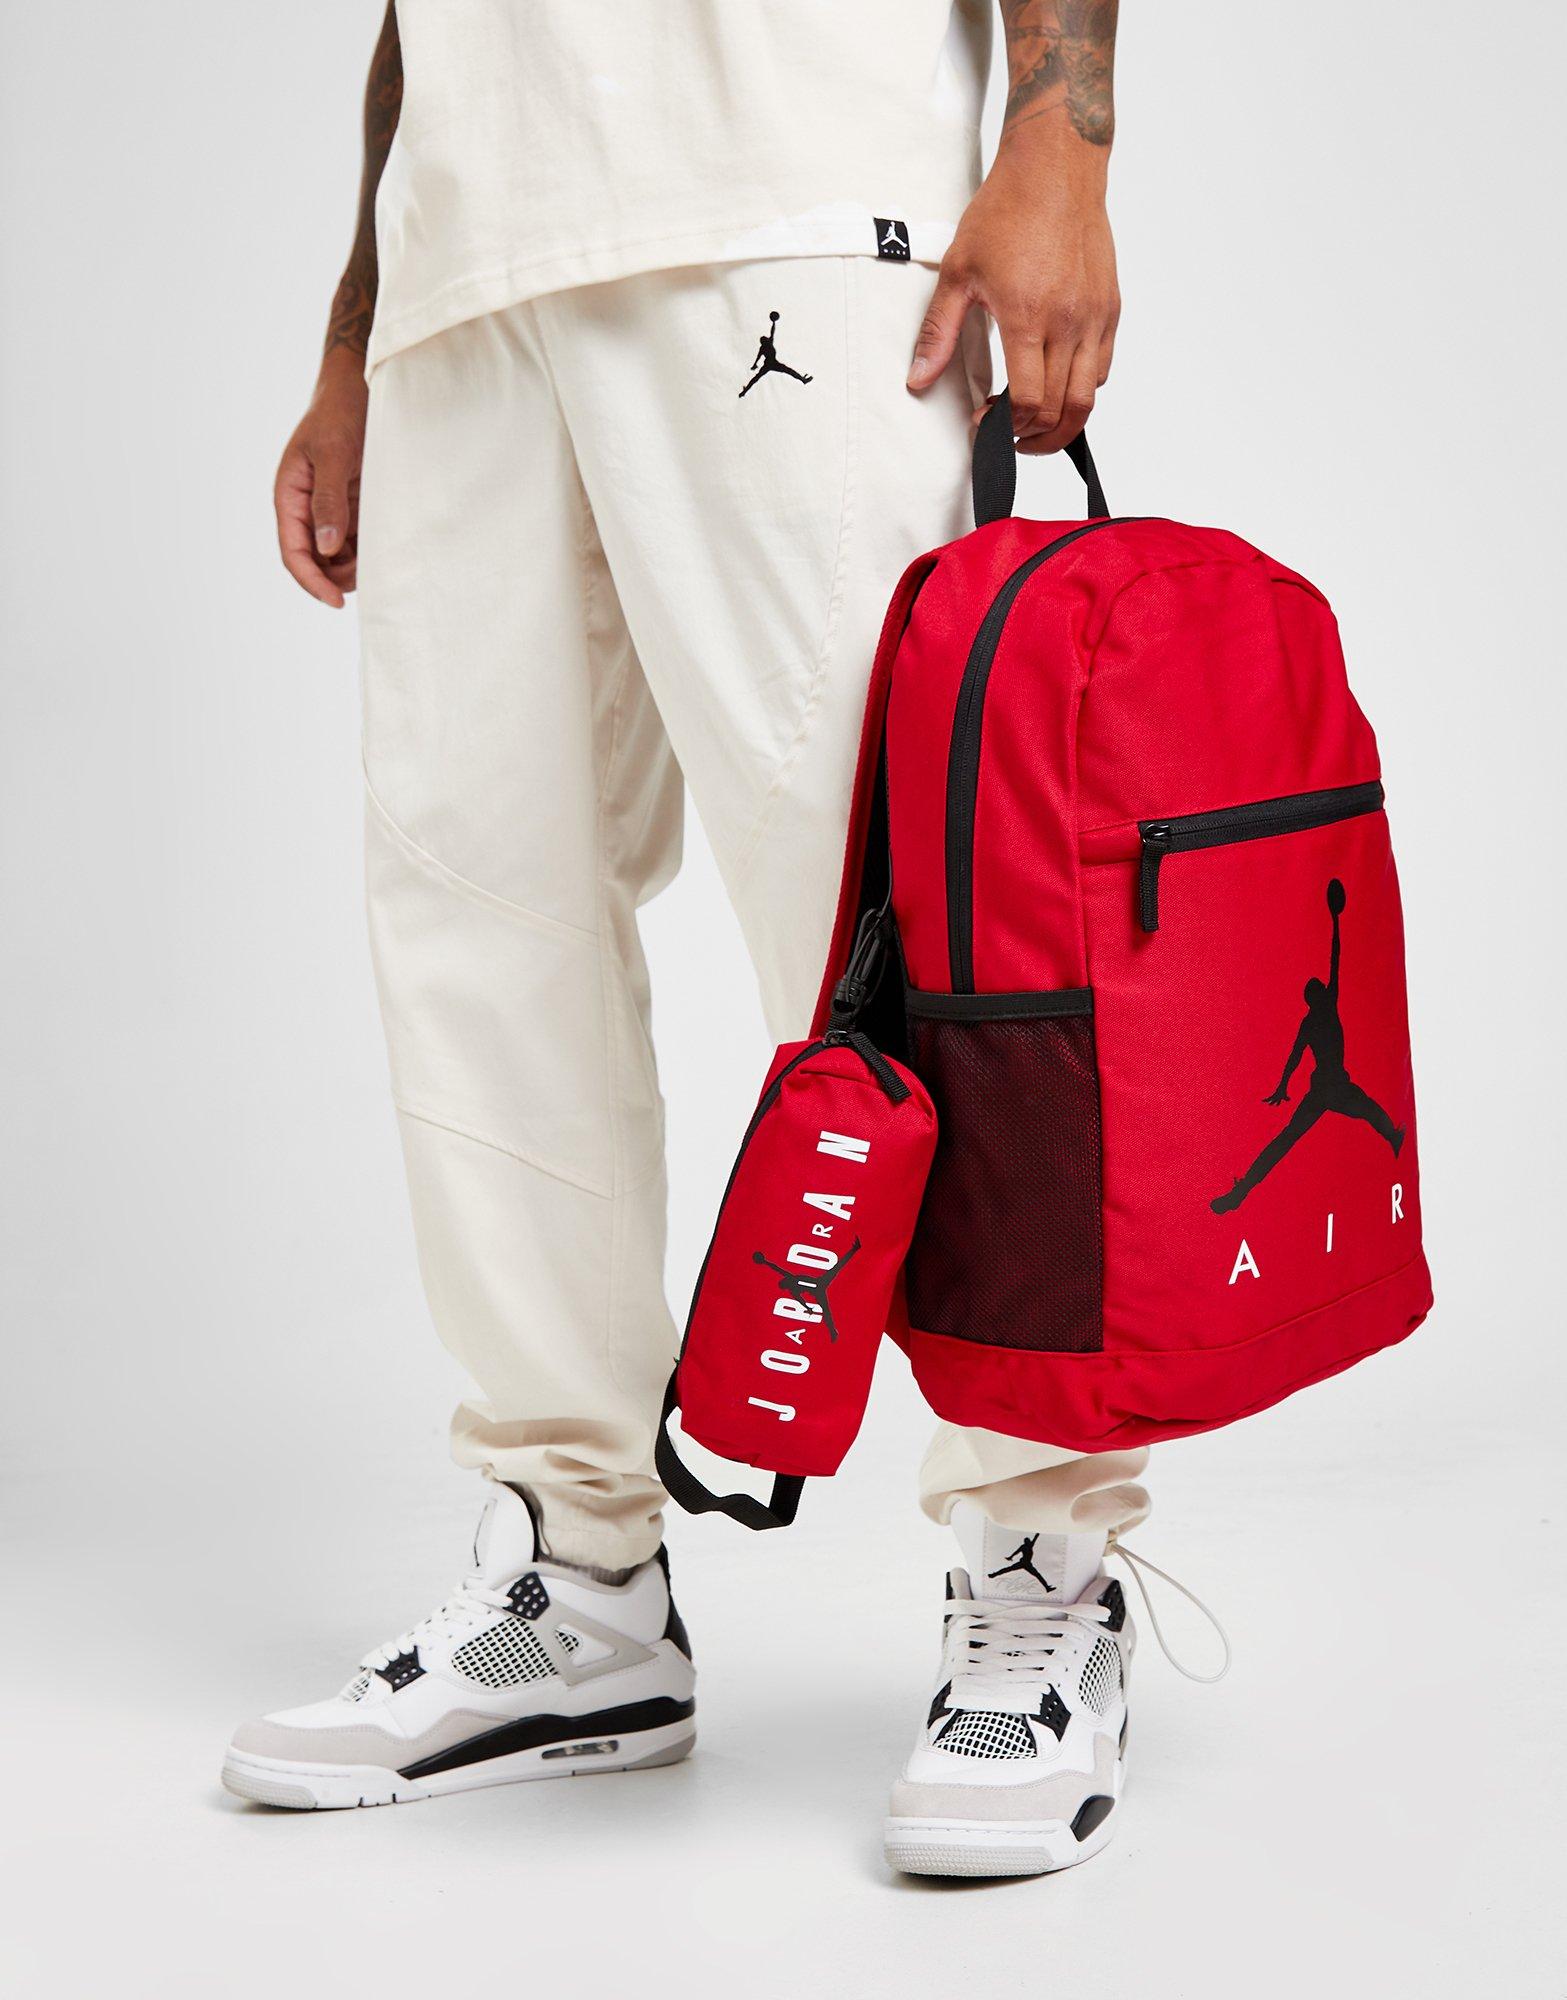 Red Jordan Pencil Case Backpack | JD Sports UK